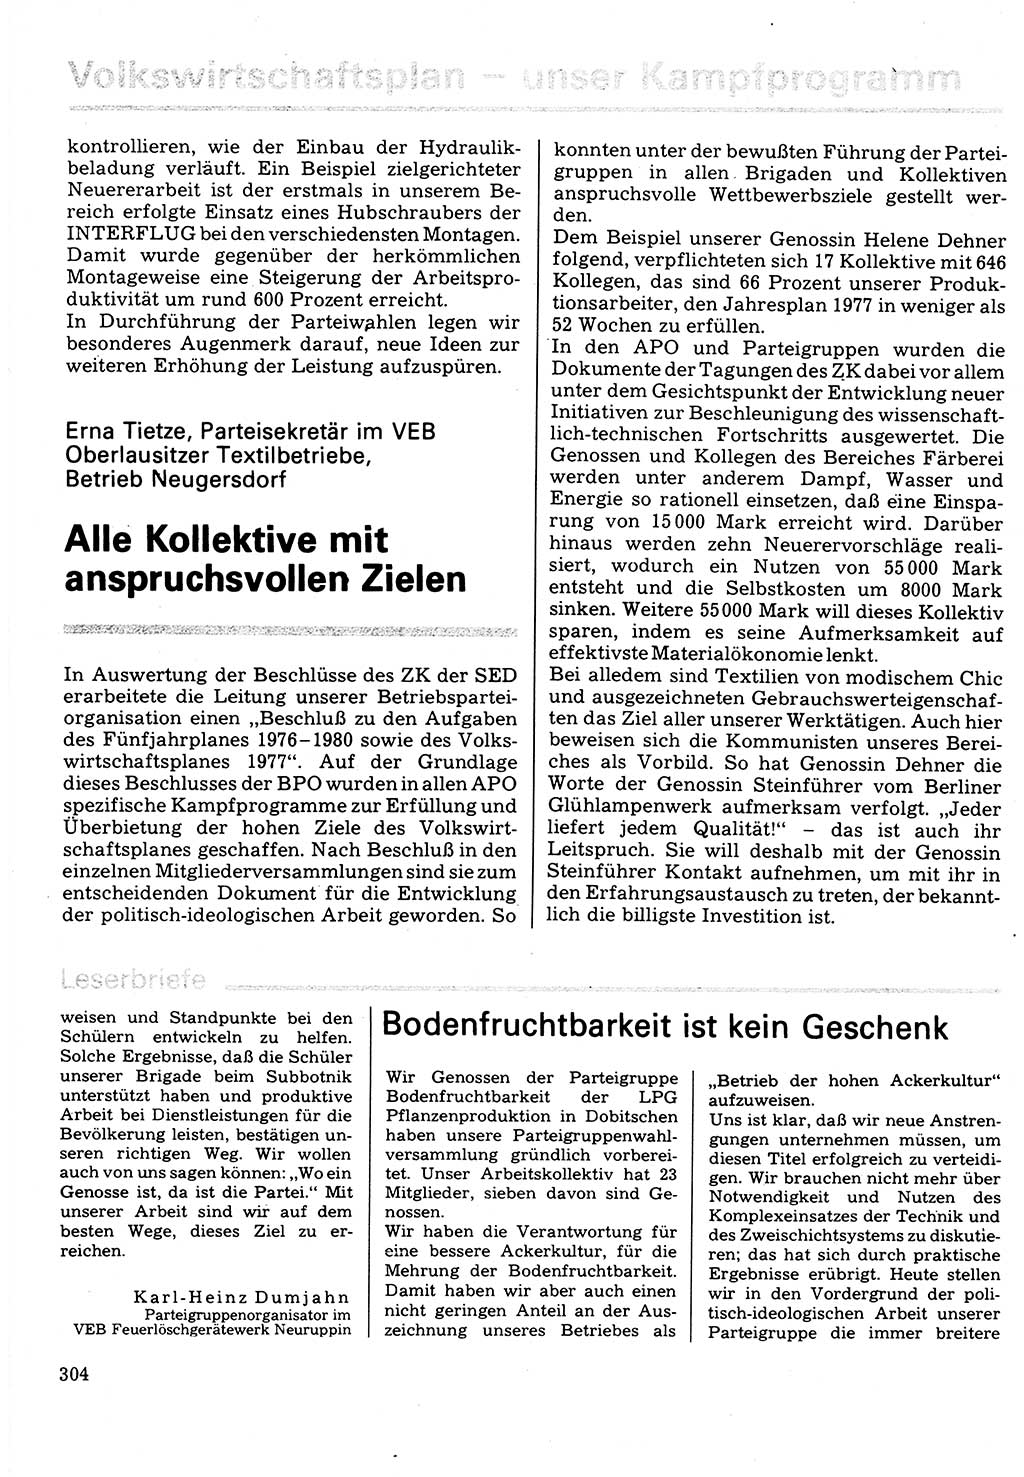 Neuer Weg (NW), Organ des Zentralkomitees (ZK) der SED (Sozialistische Einheitspartei Deutschlands) für Fragen des Parteilebens, 32. Jahrgang [Deutsche Demokratische Republik (DDR)] 1977, Seite 304 (NW ZK SED DDR 1977, S. 304)